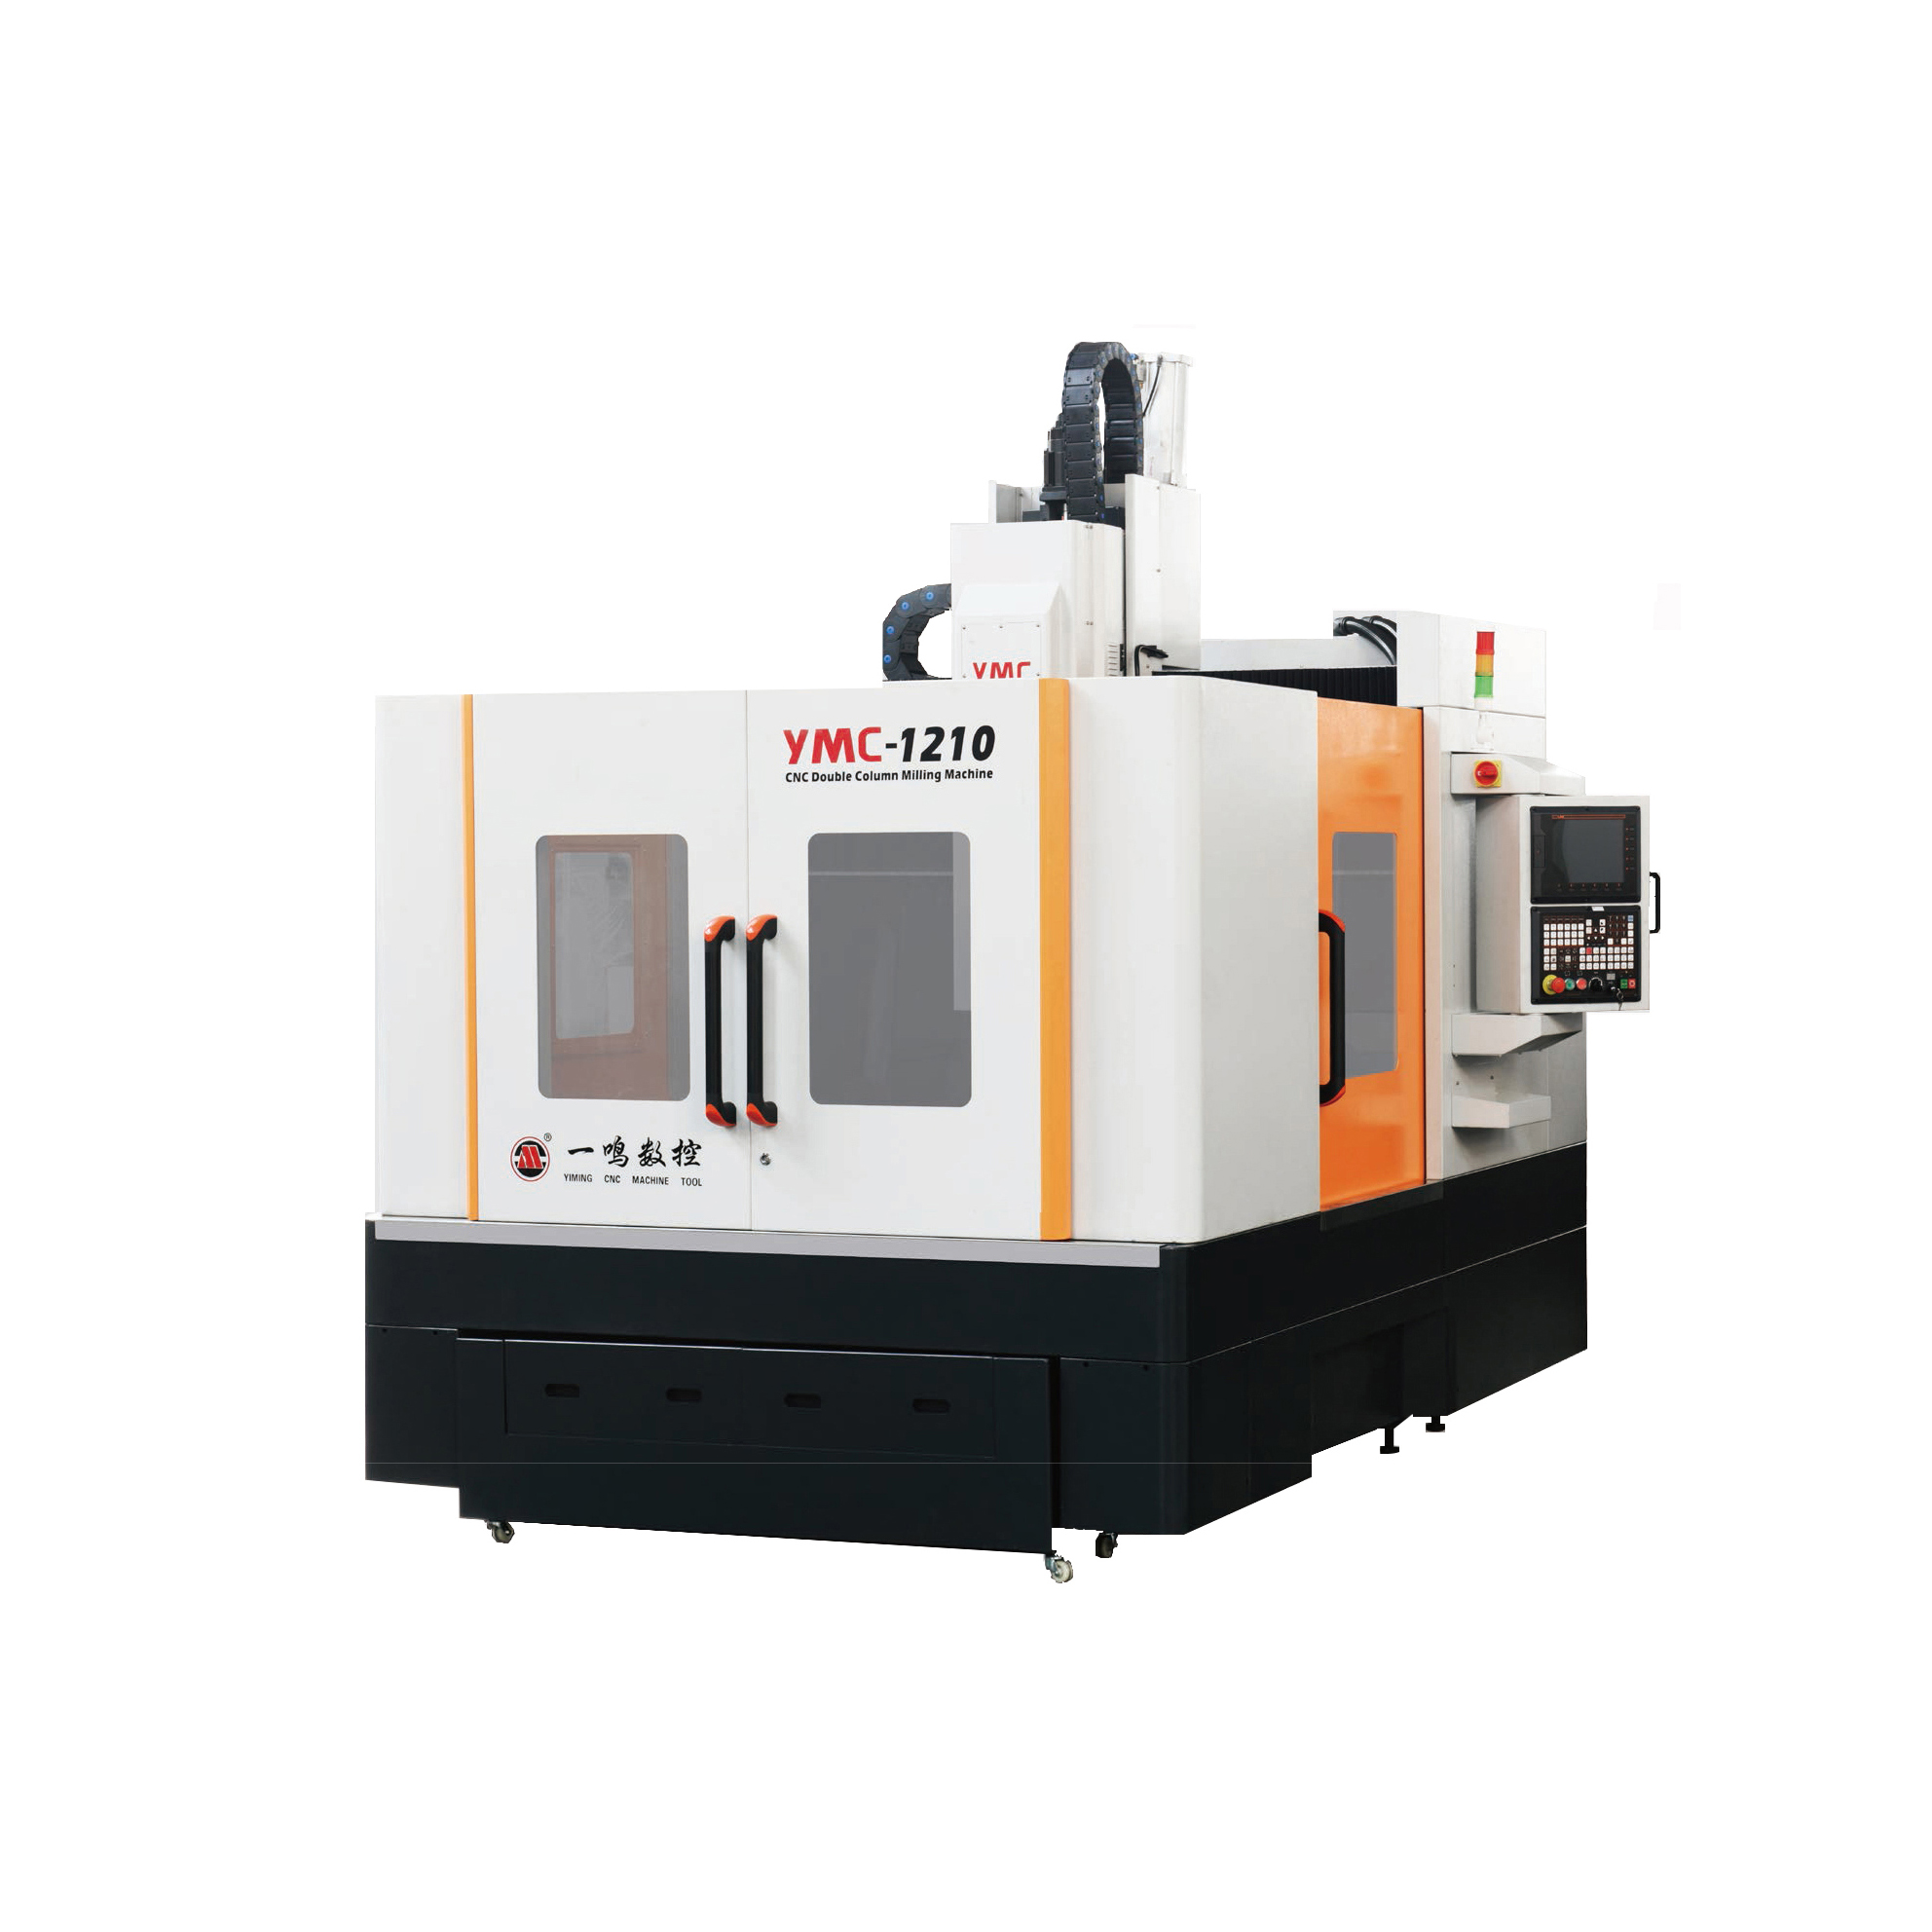 海西CNC engraving  milling machine ymc-1210